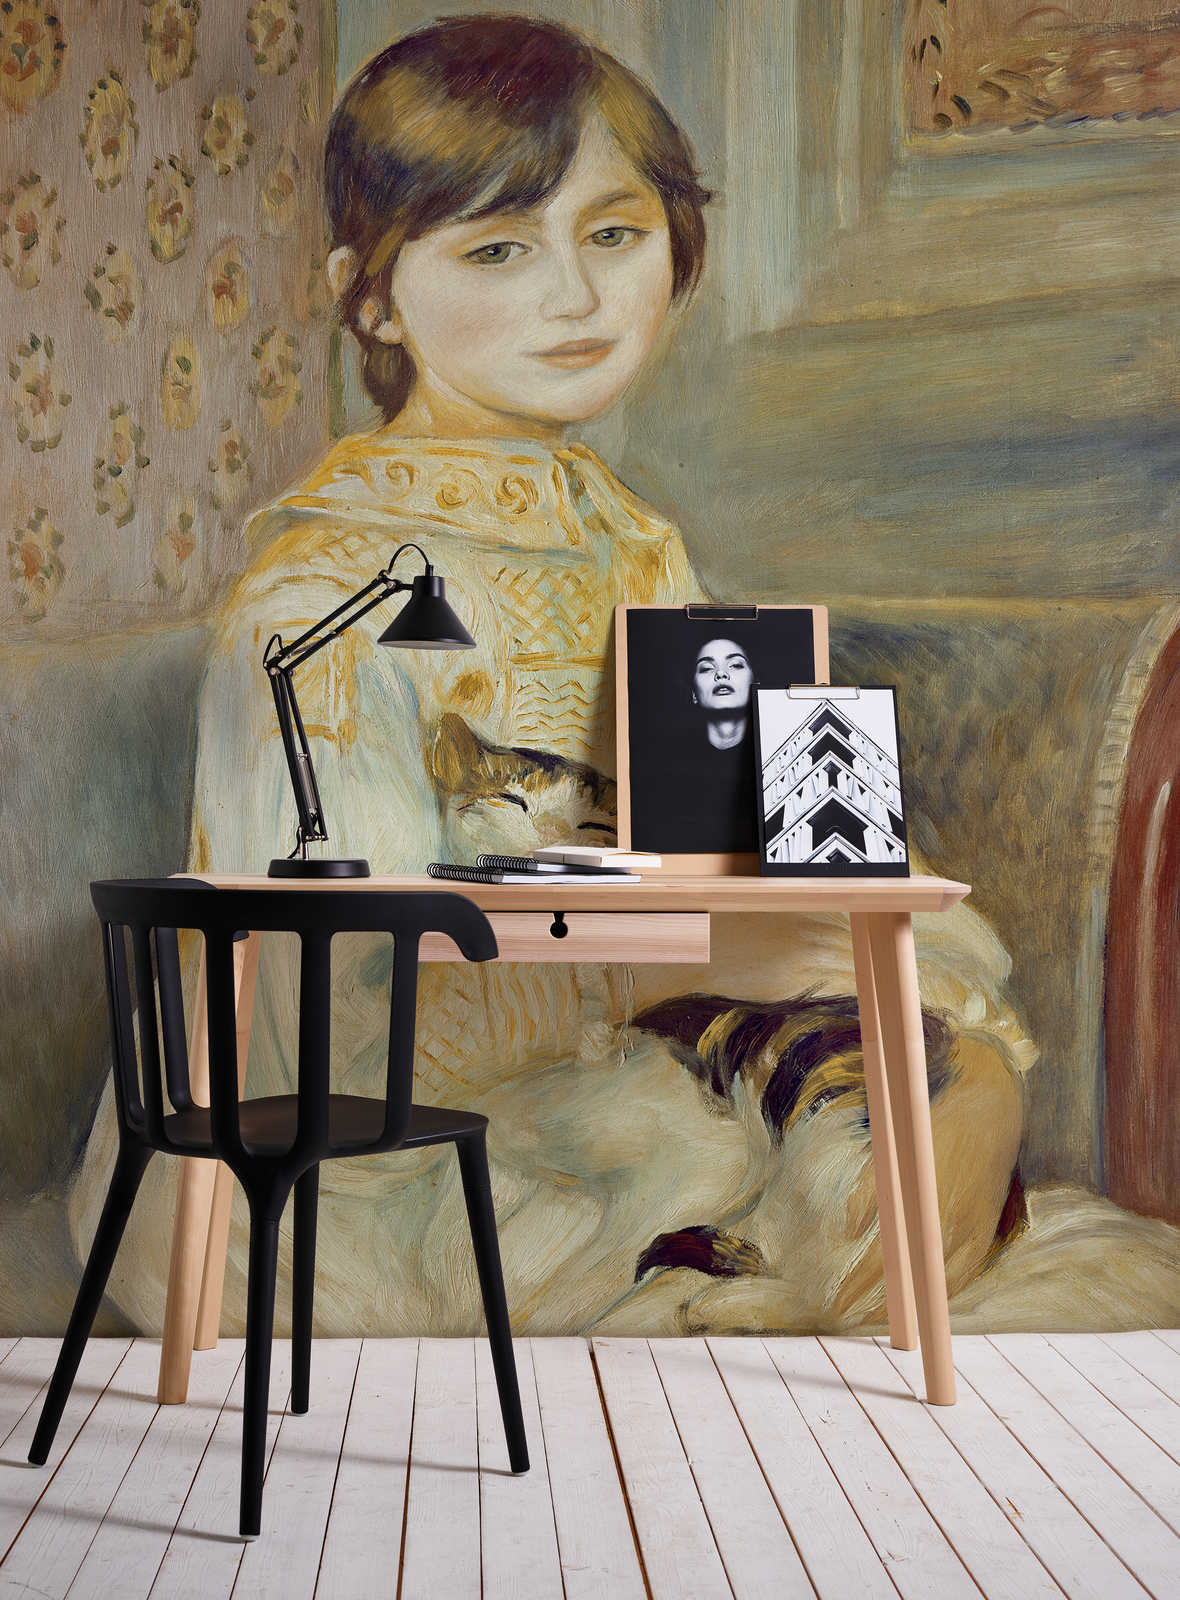             Papier peint "Mademoiselle Julie au chat" de Pierre Auguste Renoir
        